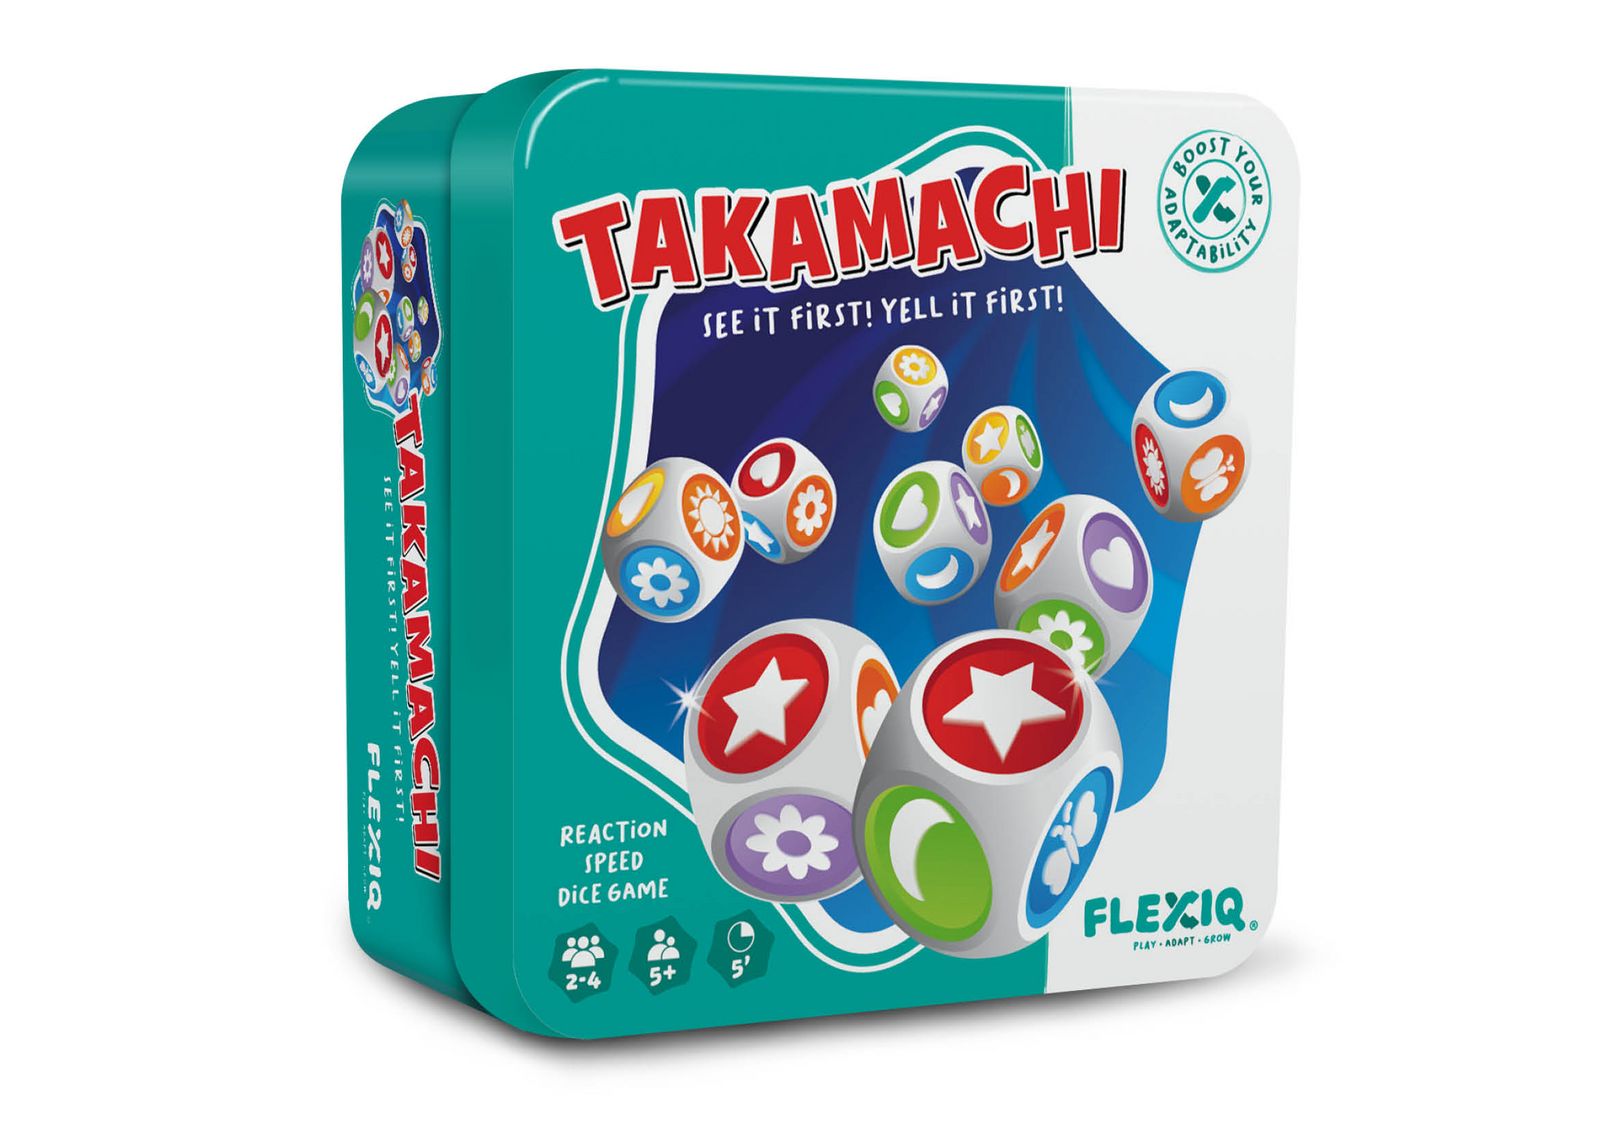 FLEXIQ - Takamachi 